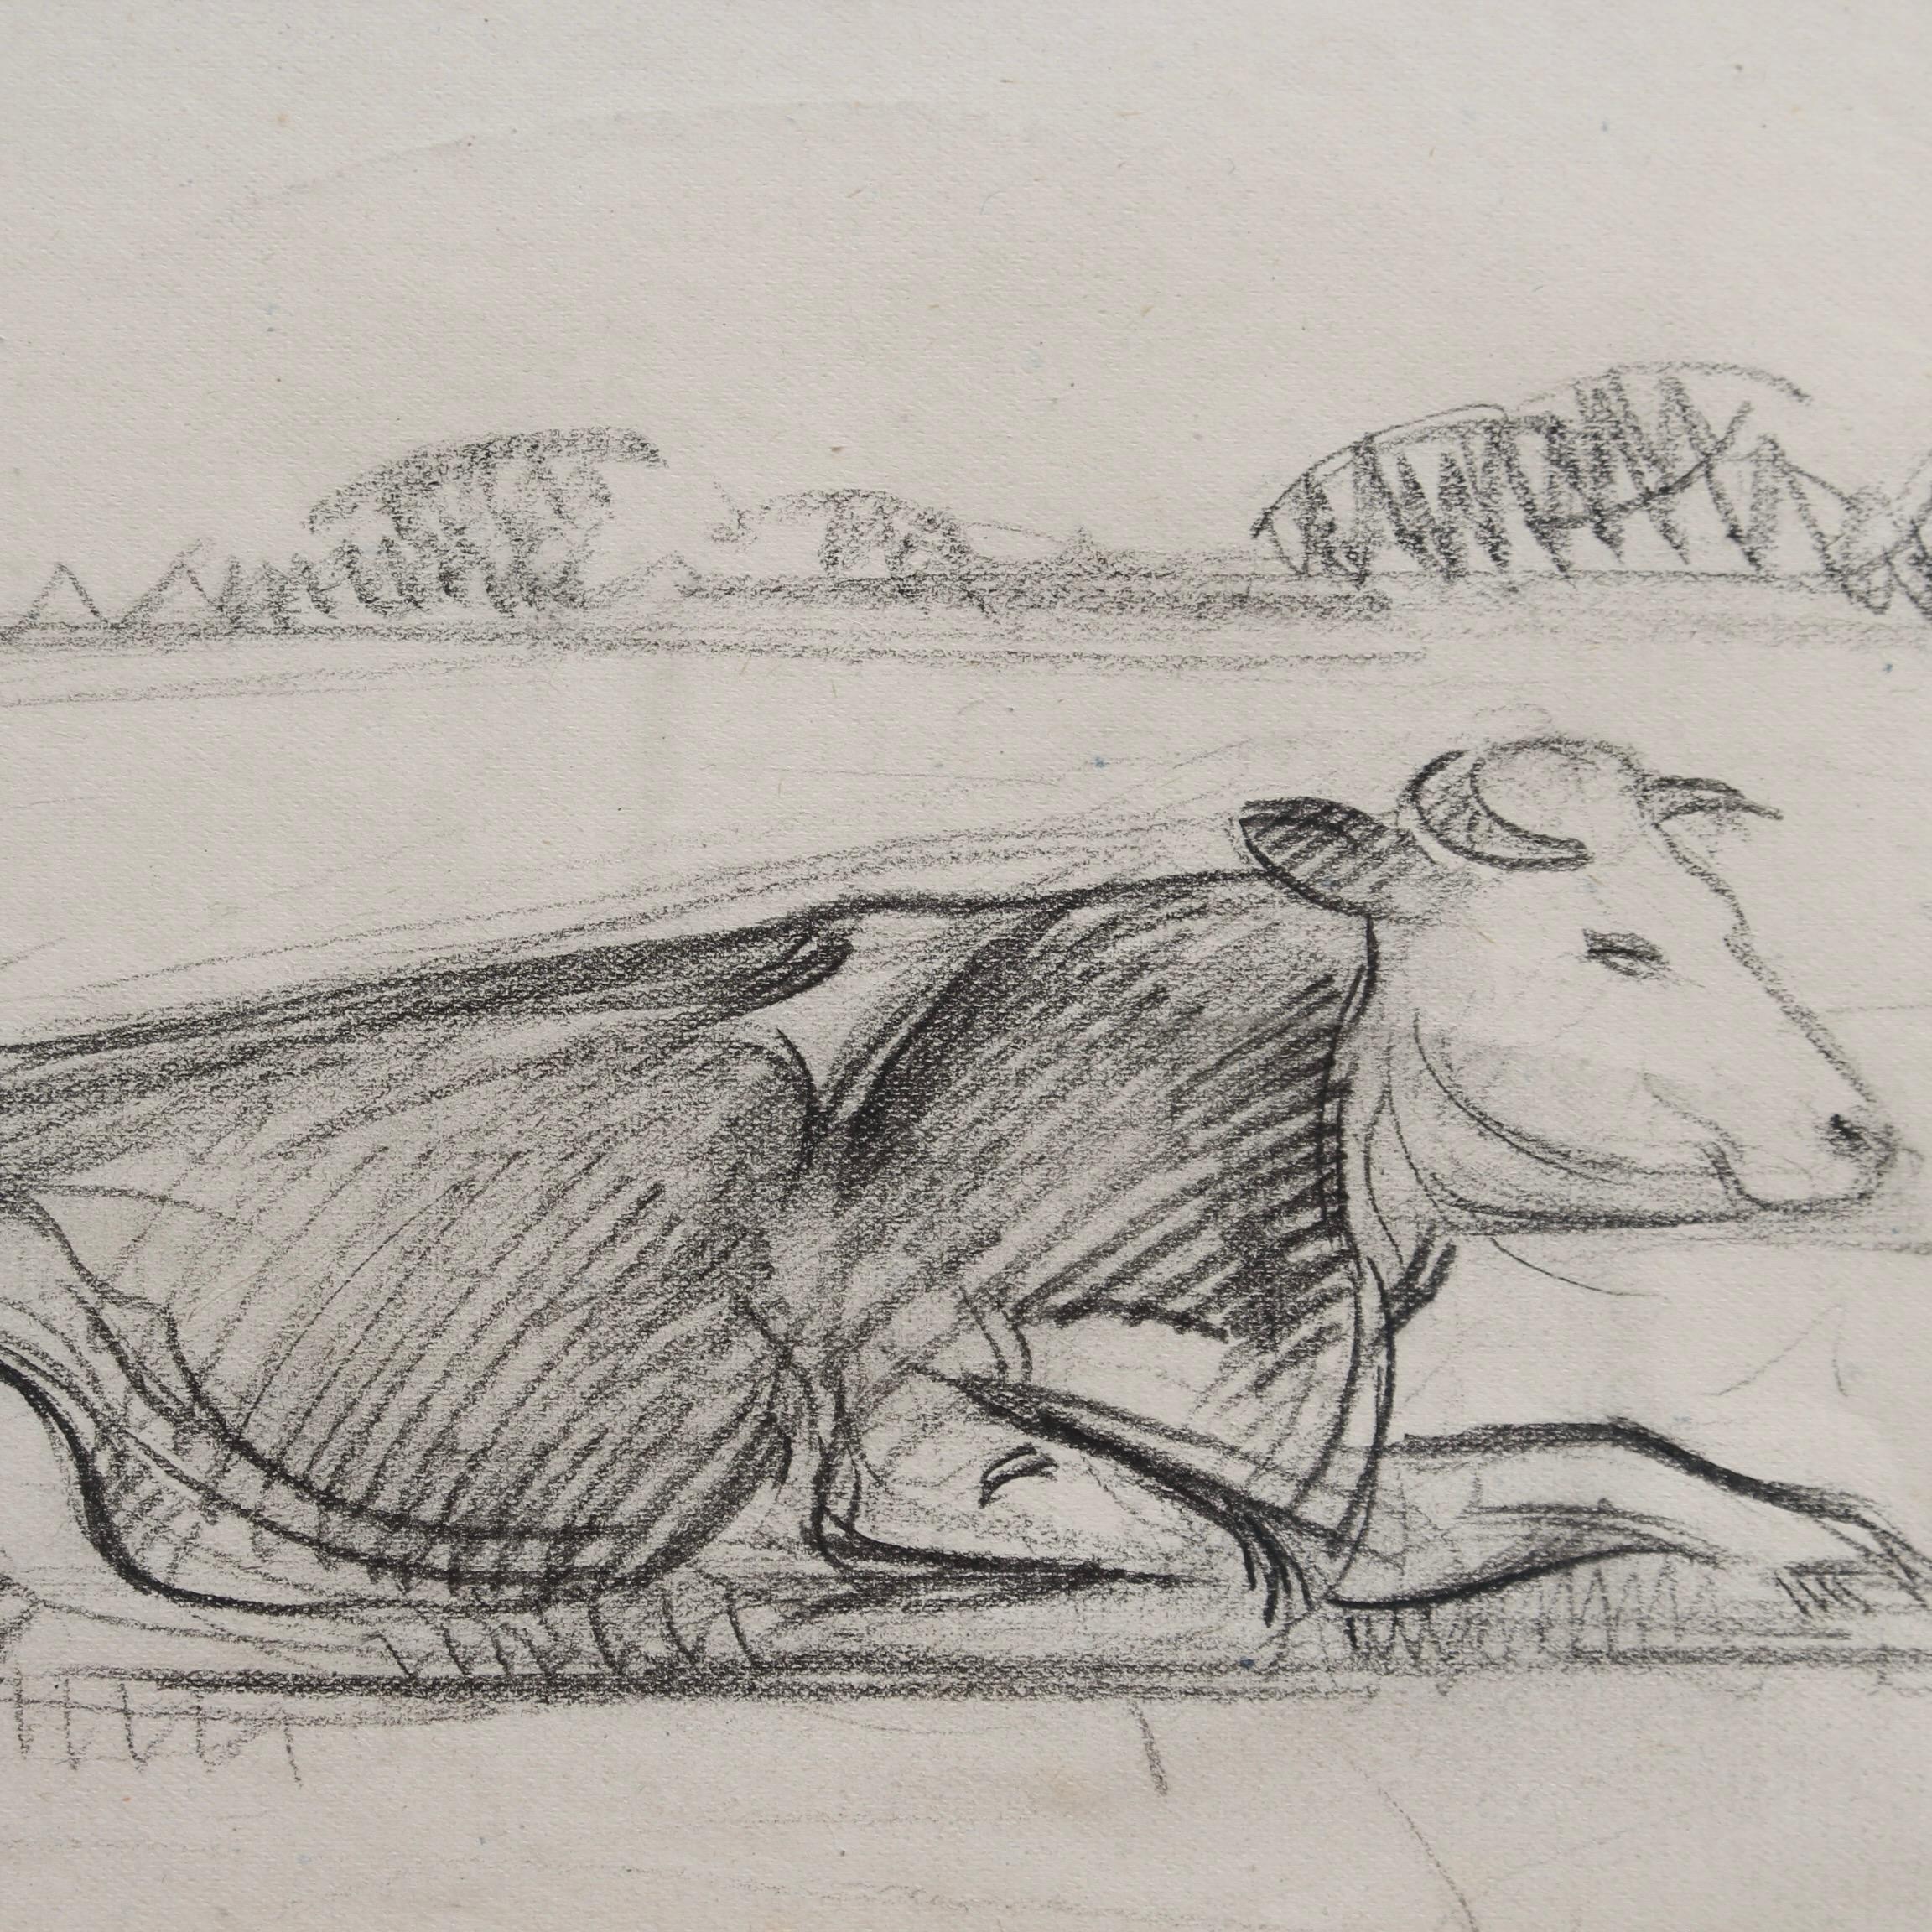 Portrait of a Bull in a Field 5